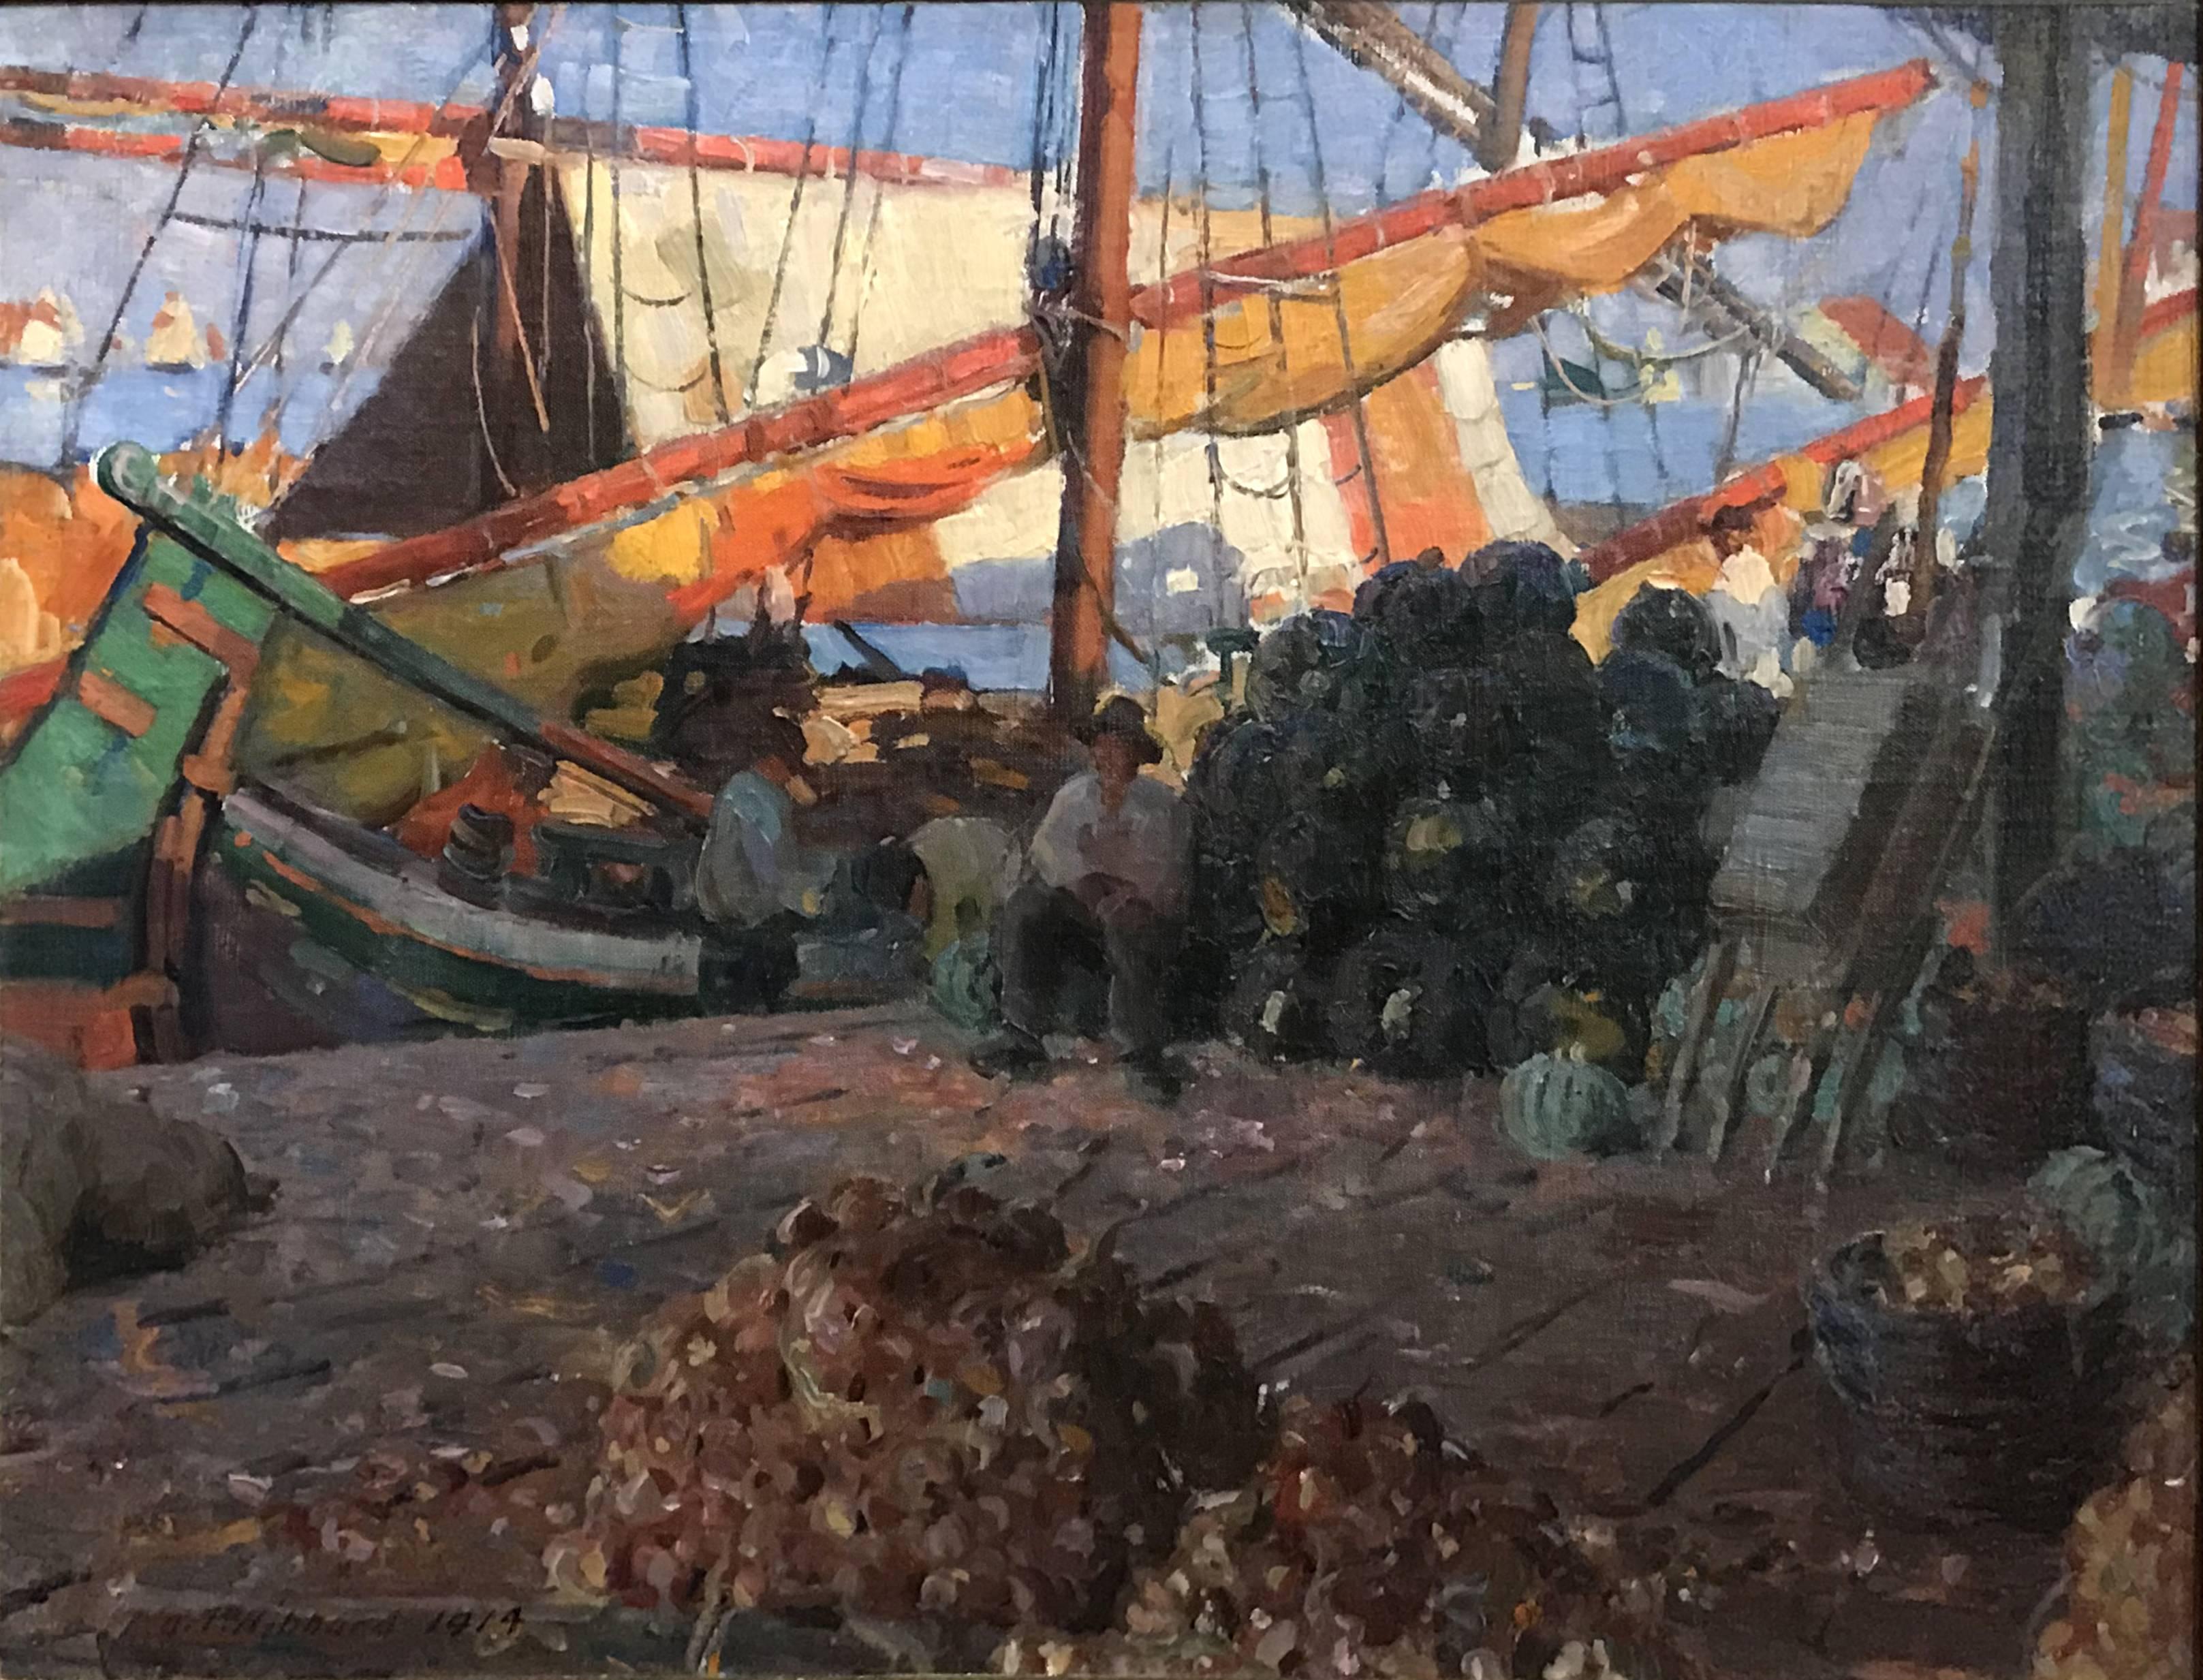 Der Hafen von Venedig – Painting von Aldro Thompson Hibbard